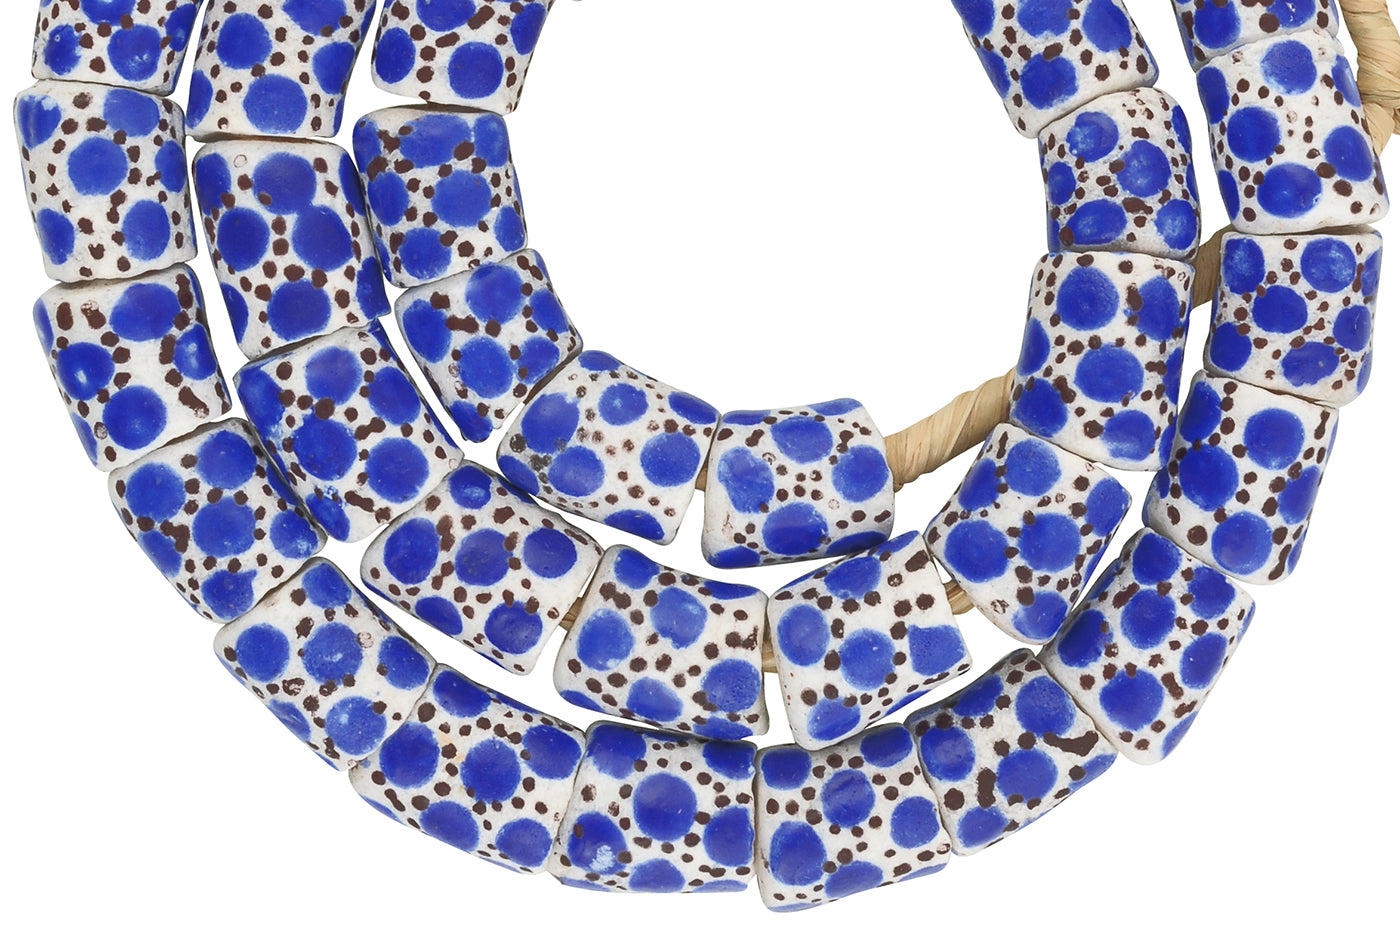 Handgefertigte Perlen aus recyceltem Glaspulver Krobo Halskette ethnischen Ghana